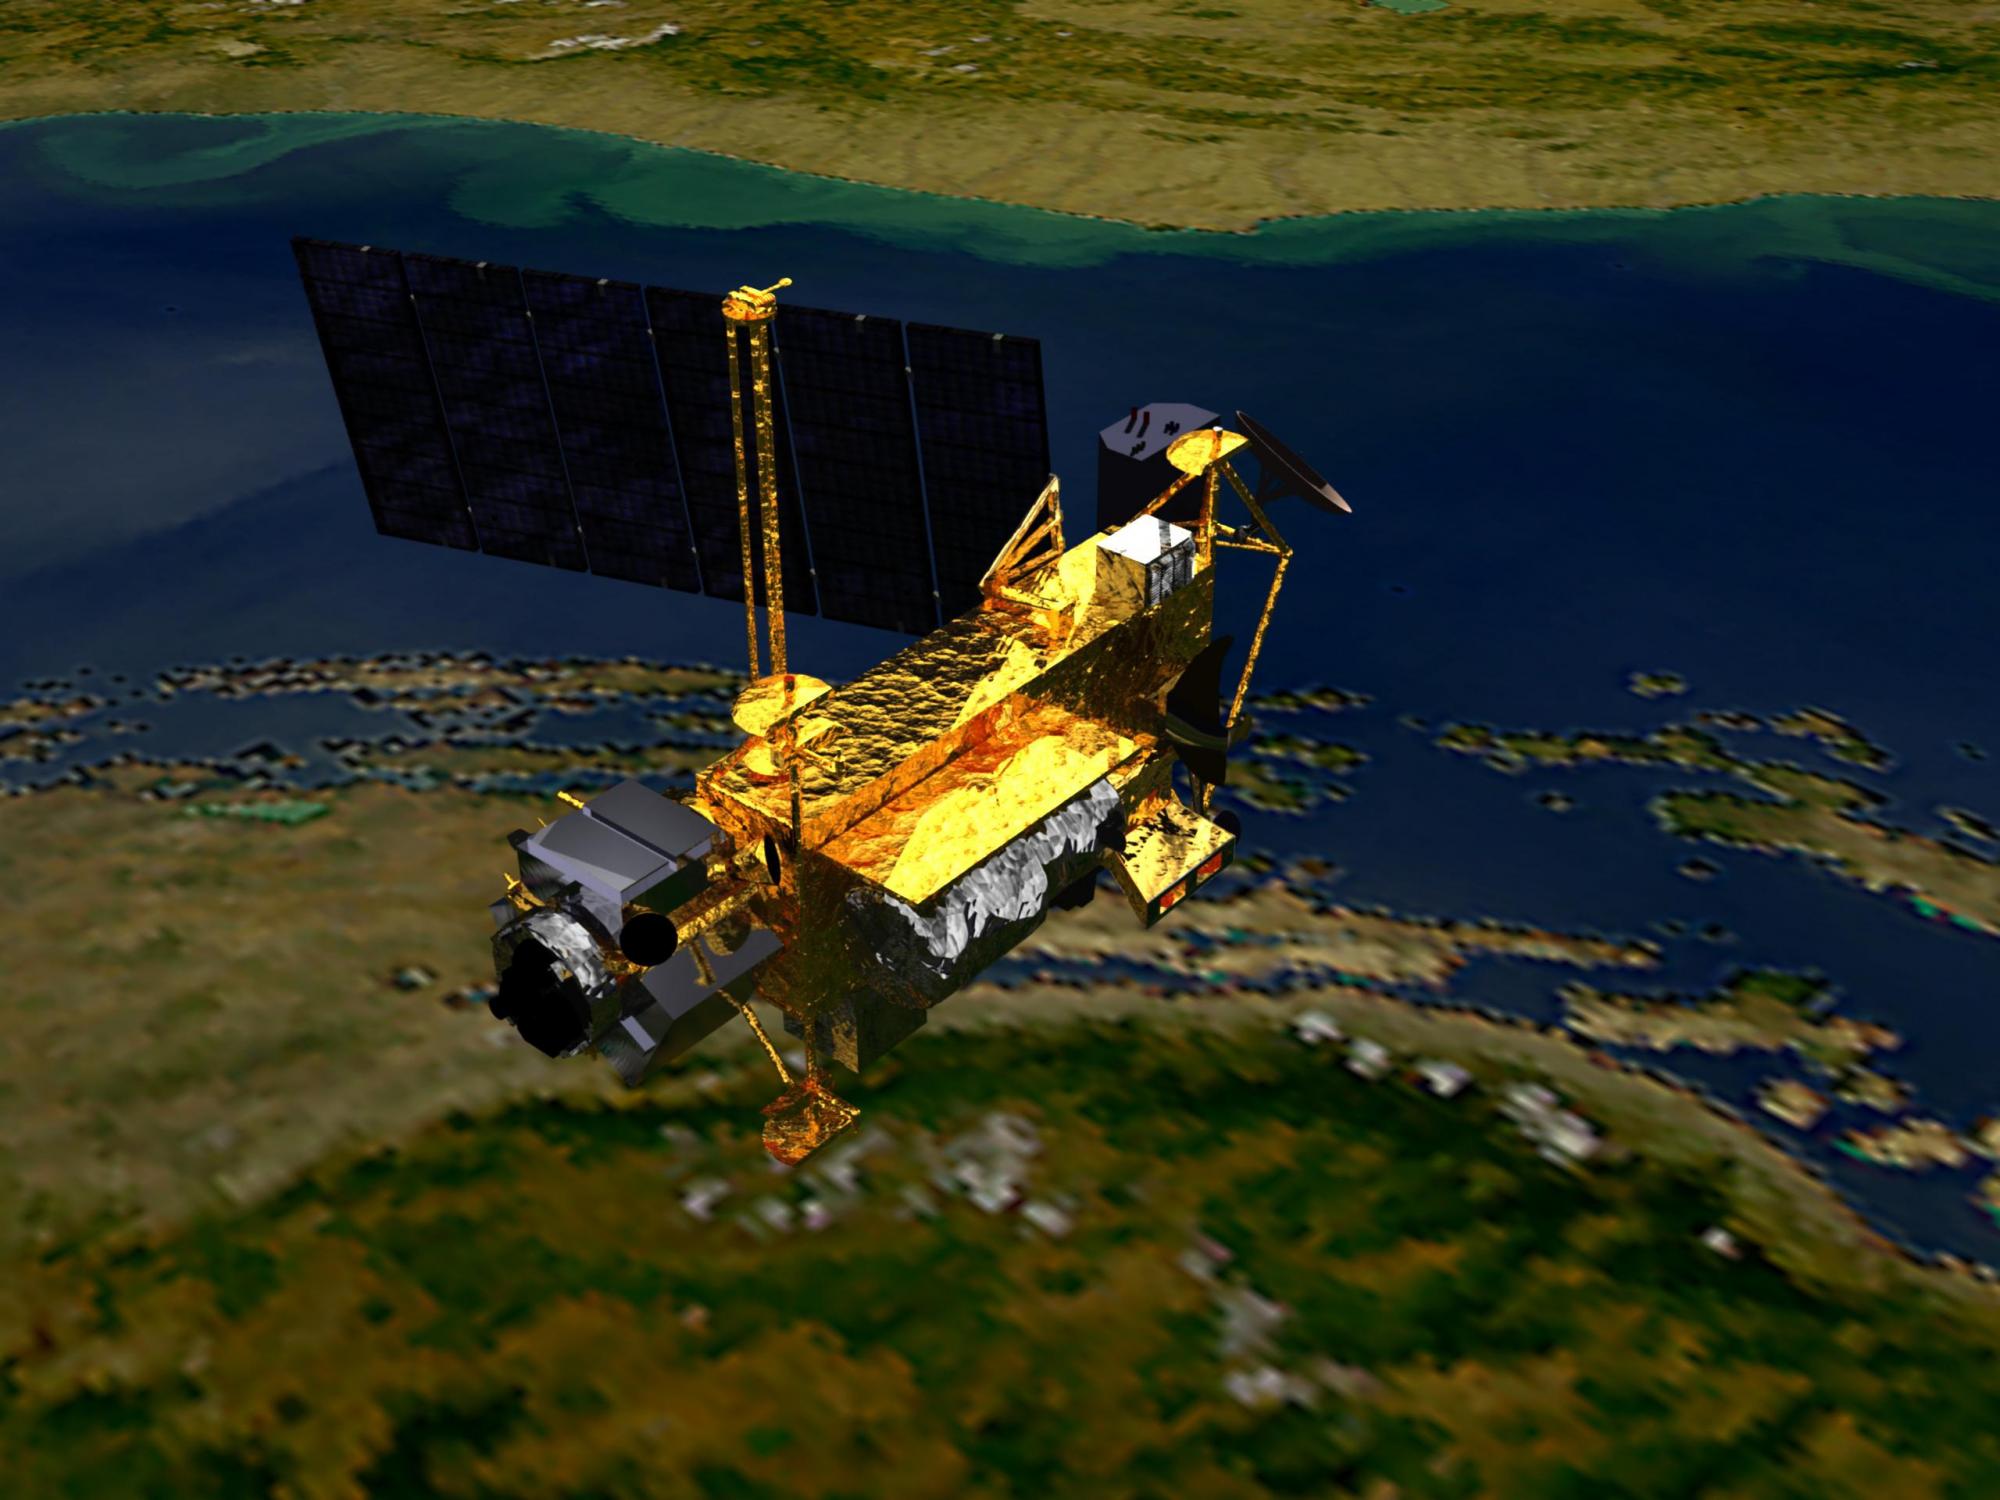 美国报废卫星残骸或永远找不到 地球将迎“扎堆回家”潮